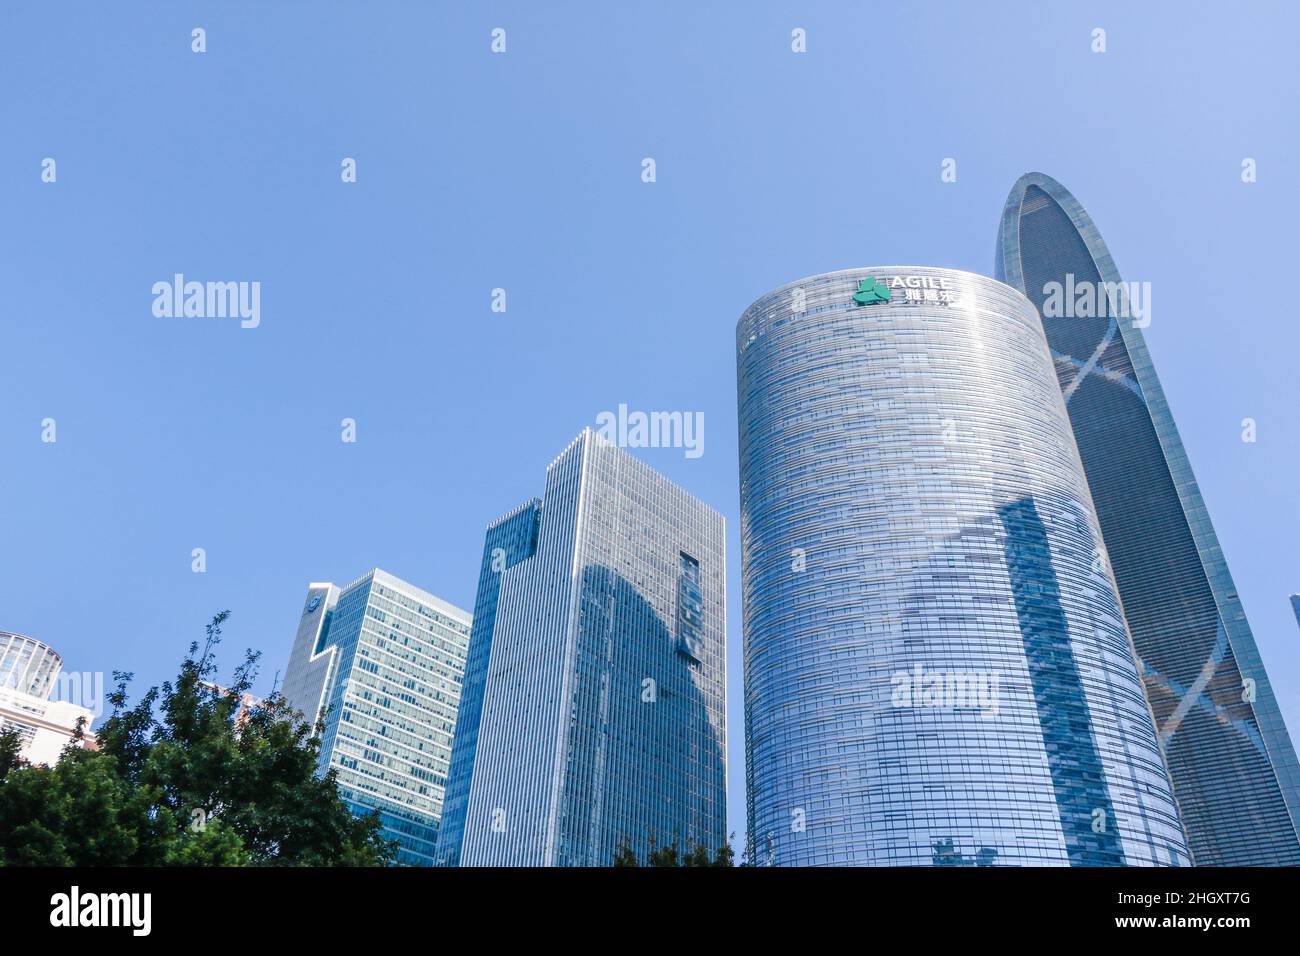 Guangzhou, Guangdong, Cina - 30 novembre 2019: Agile Group è un conglomerato integrato specializzato nello sviluppo immobiliare con una vasta presenza Foto Stock